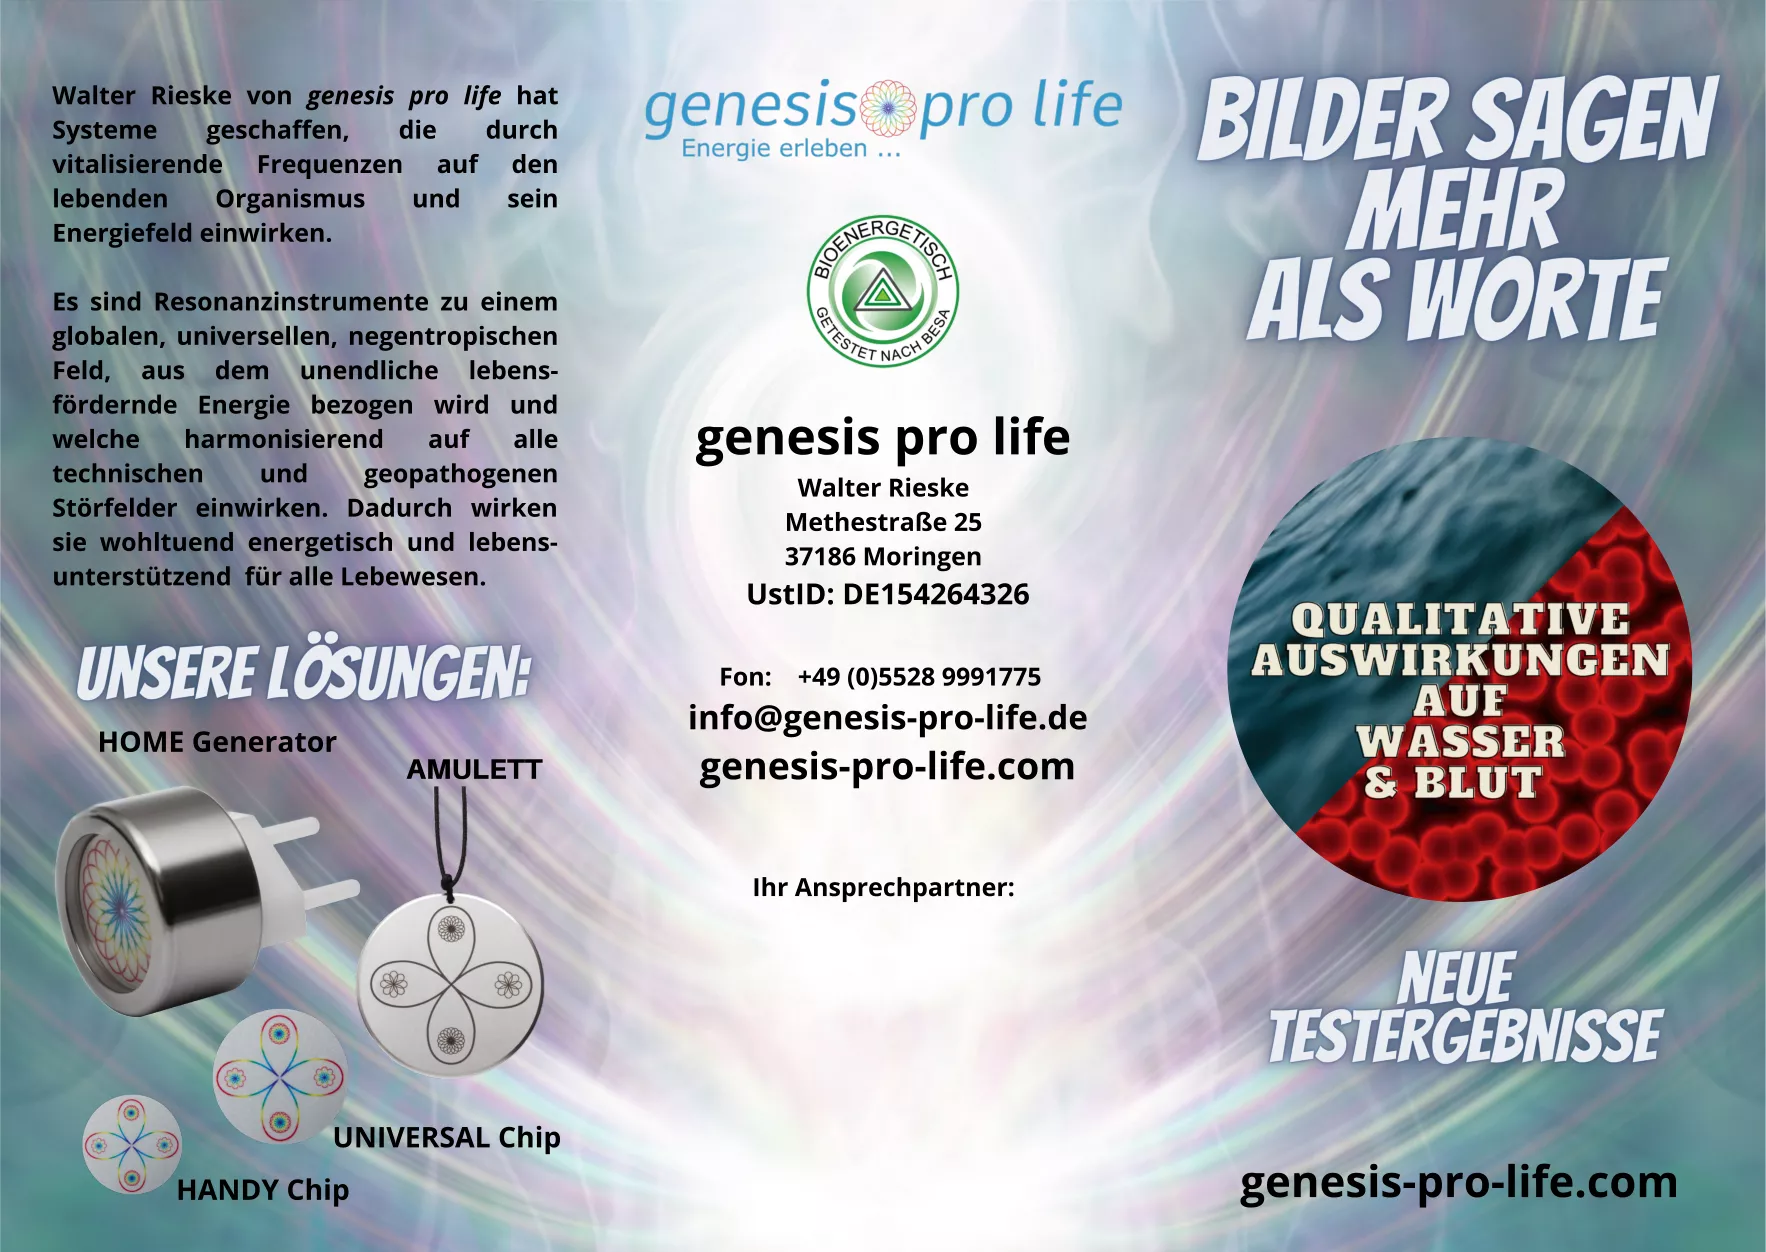 genesis pro life "Bilder sagen mehr als Worte" Flyer (10er Pack)